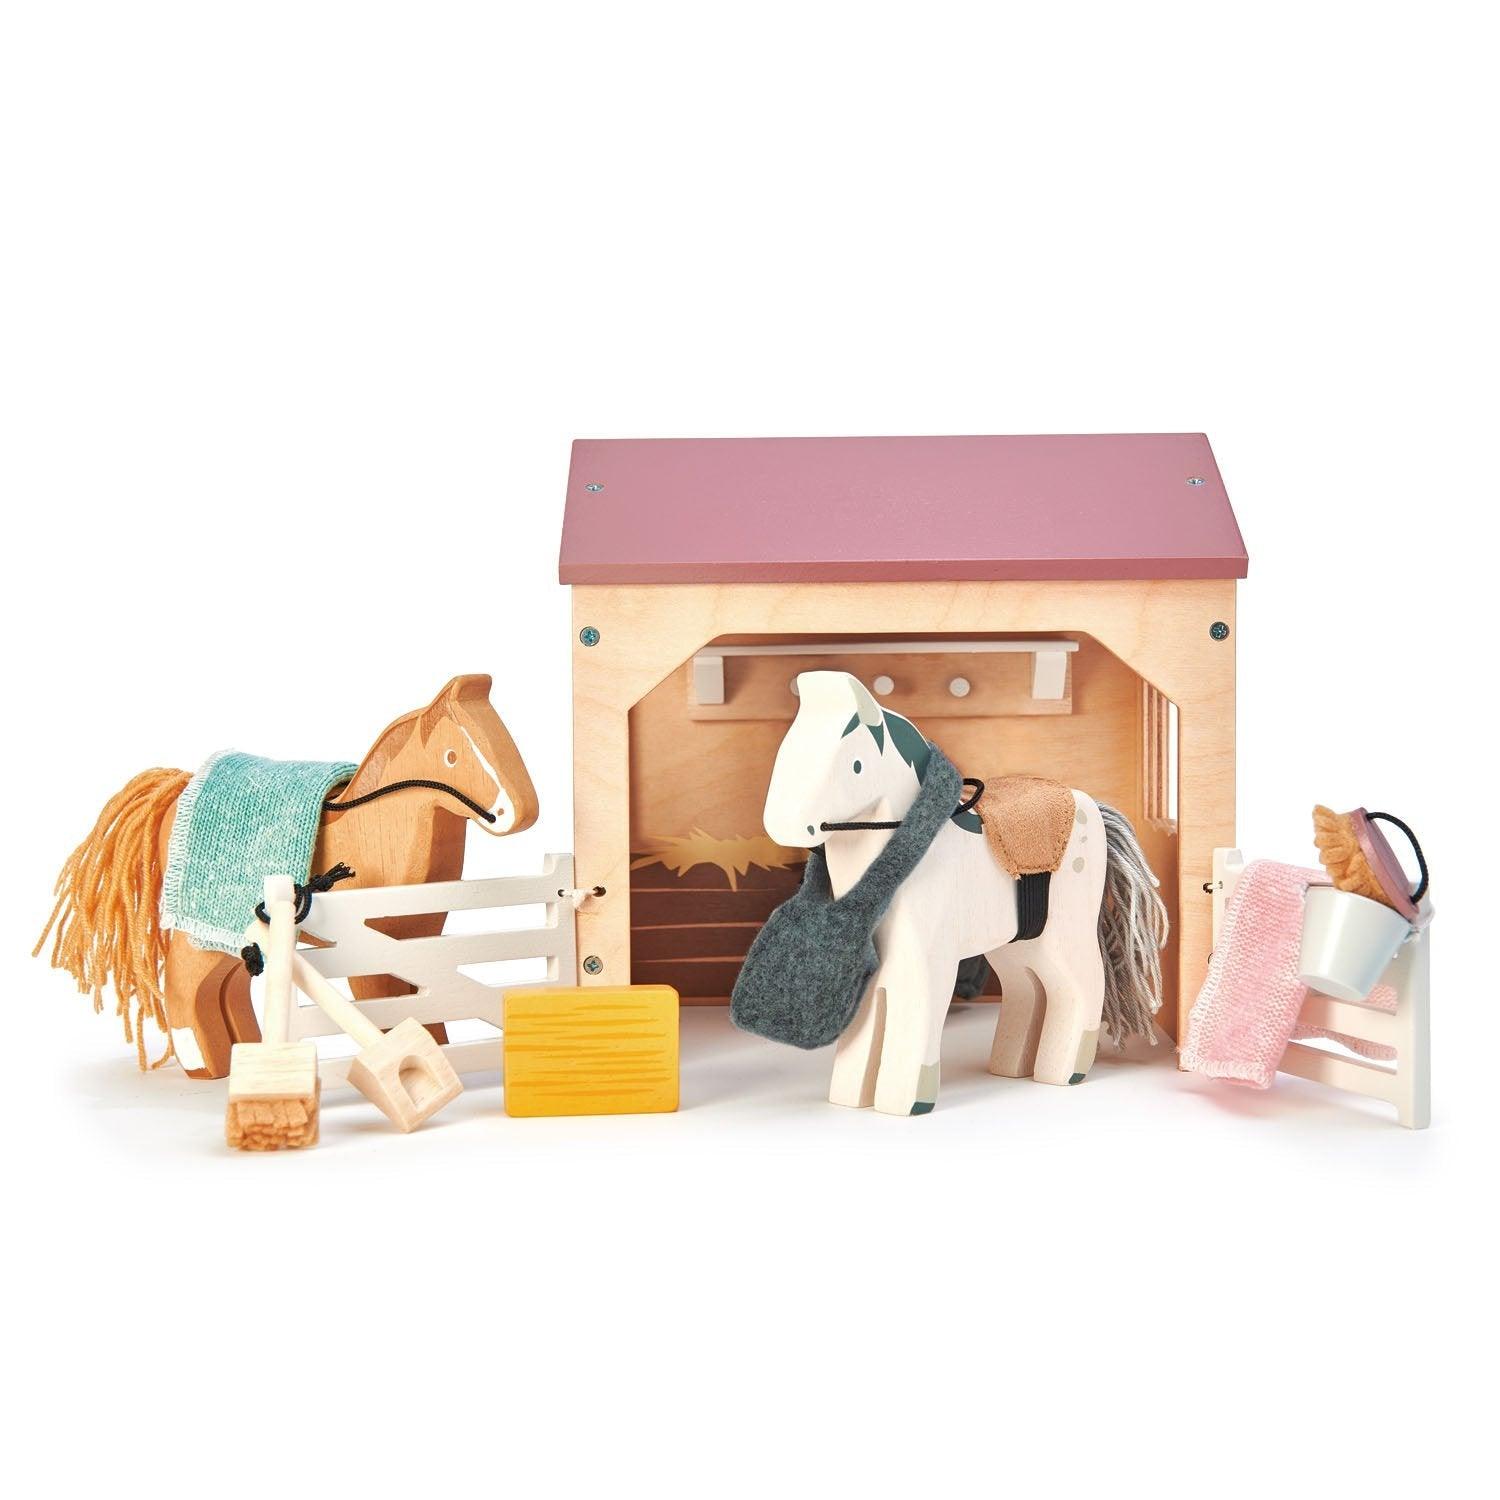 Tender Blattspielzeug: Holzfiguren stabil und Pferde